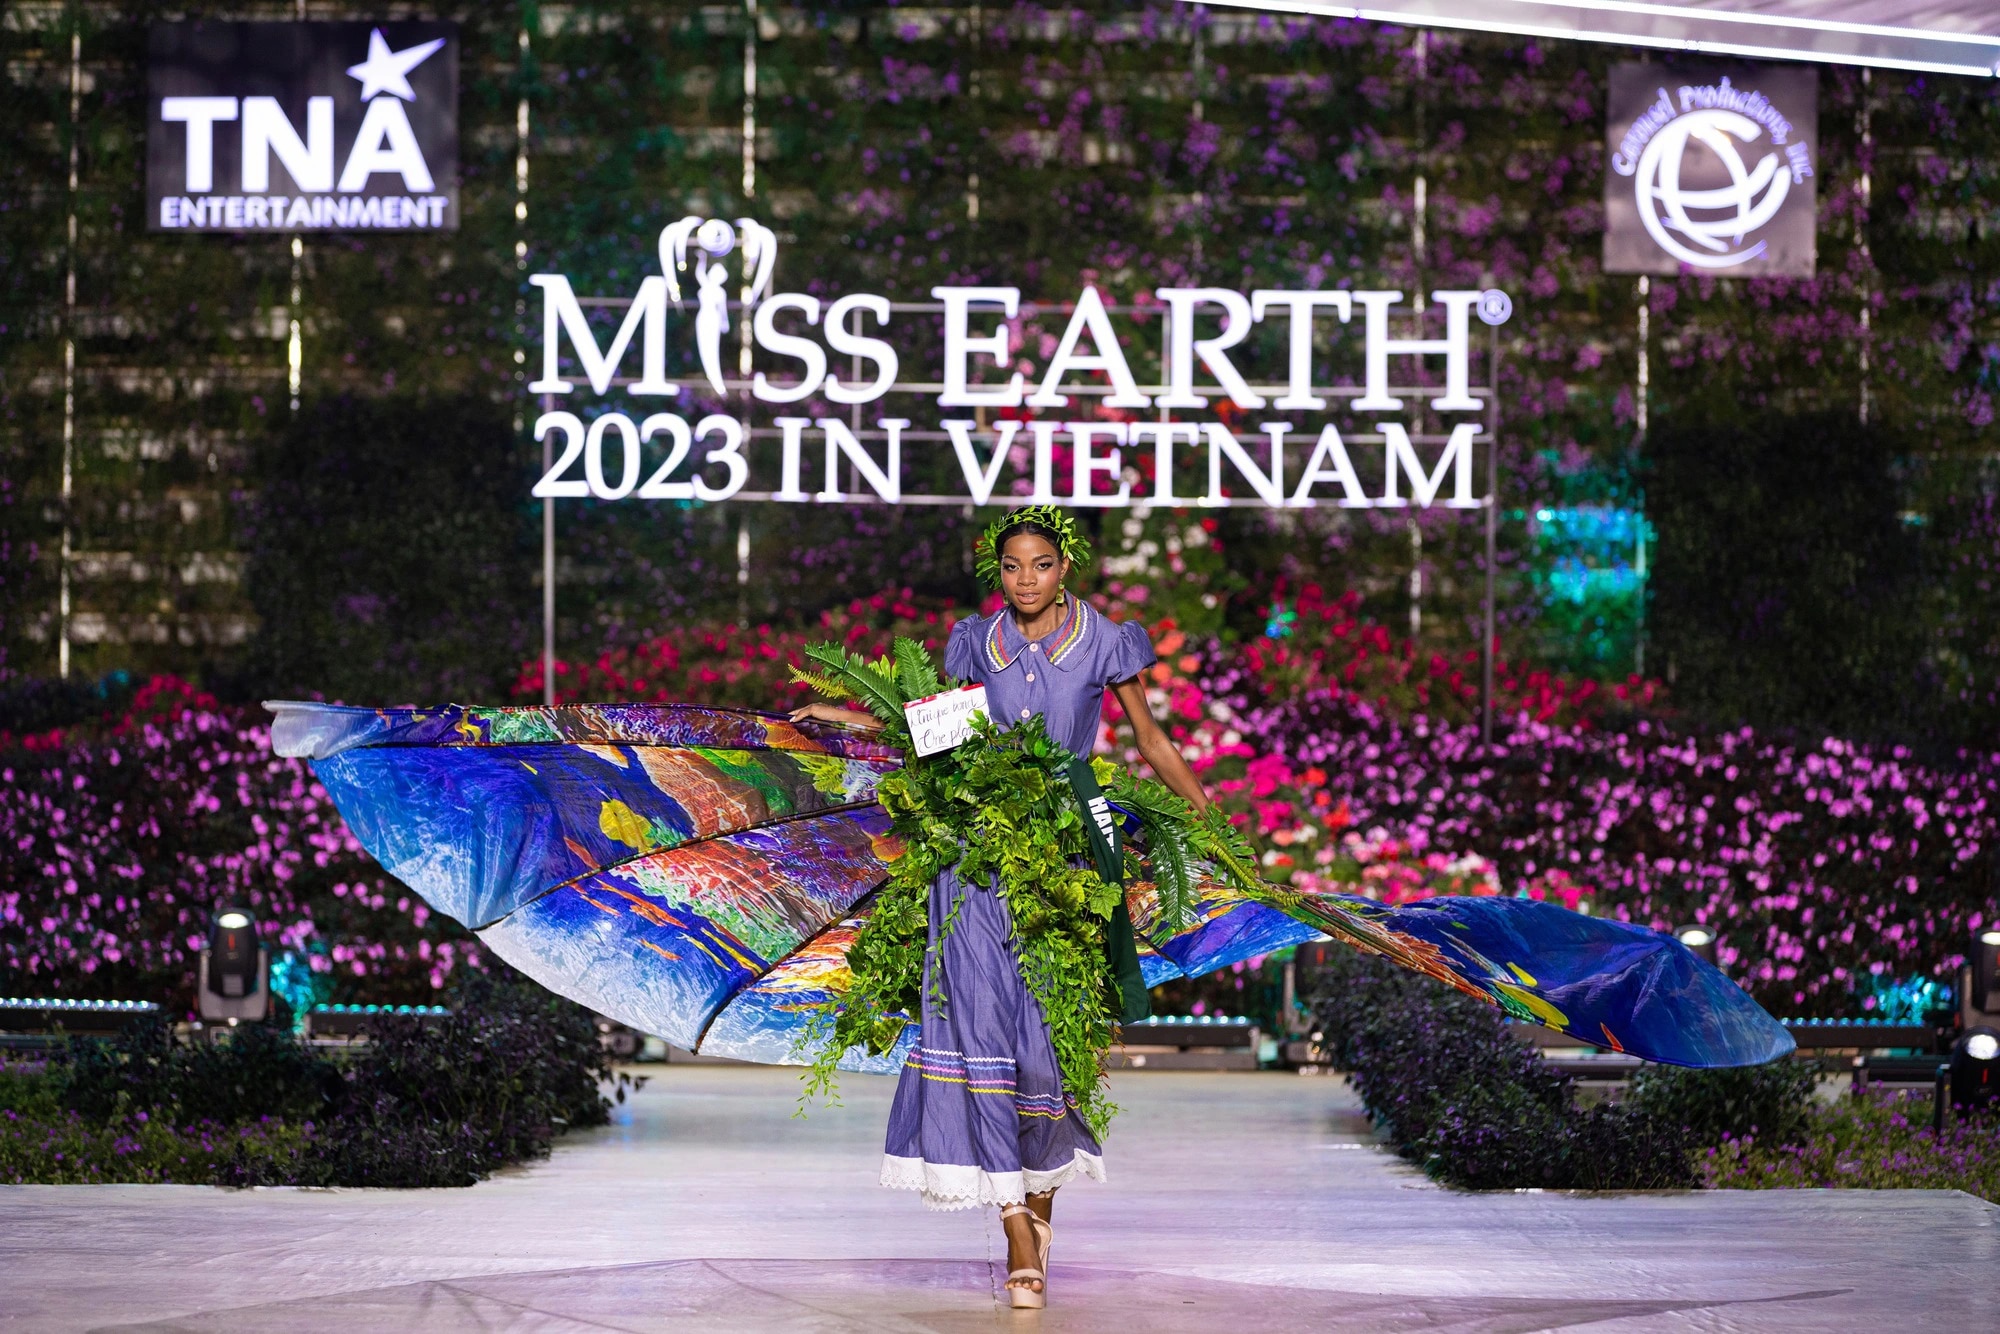 Bán kết Miss Earth 2023 màn trình Trang phục Dân tộc bùng nổ hình ảnh cỏ hoa, muông thú - Ảnh 27.